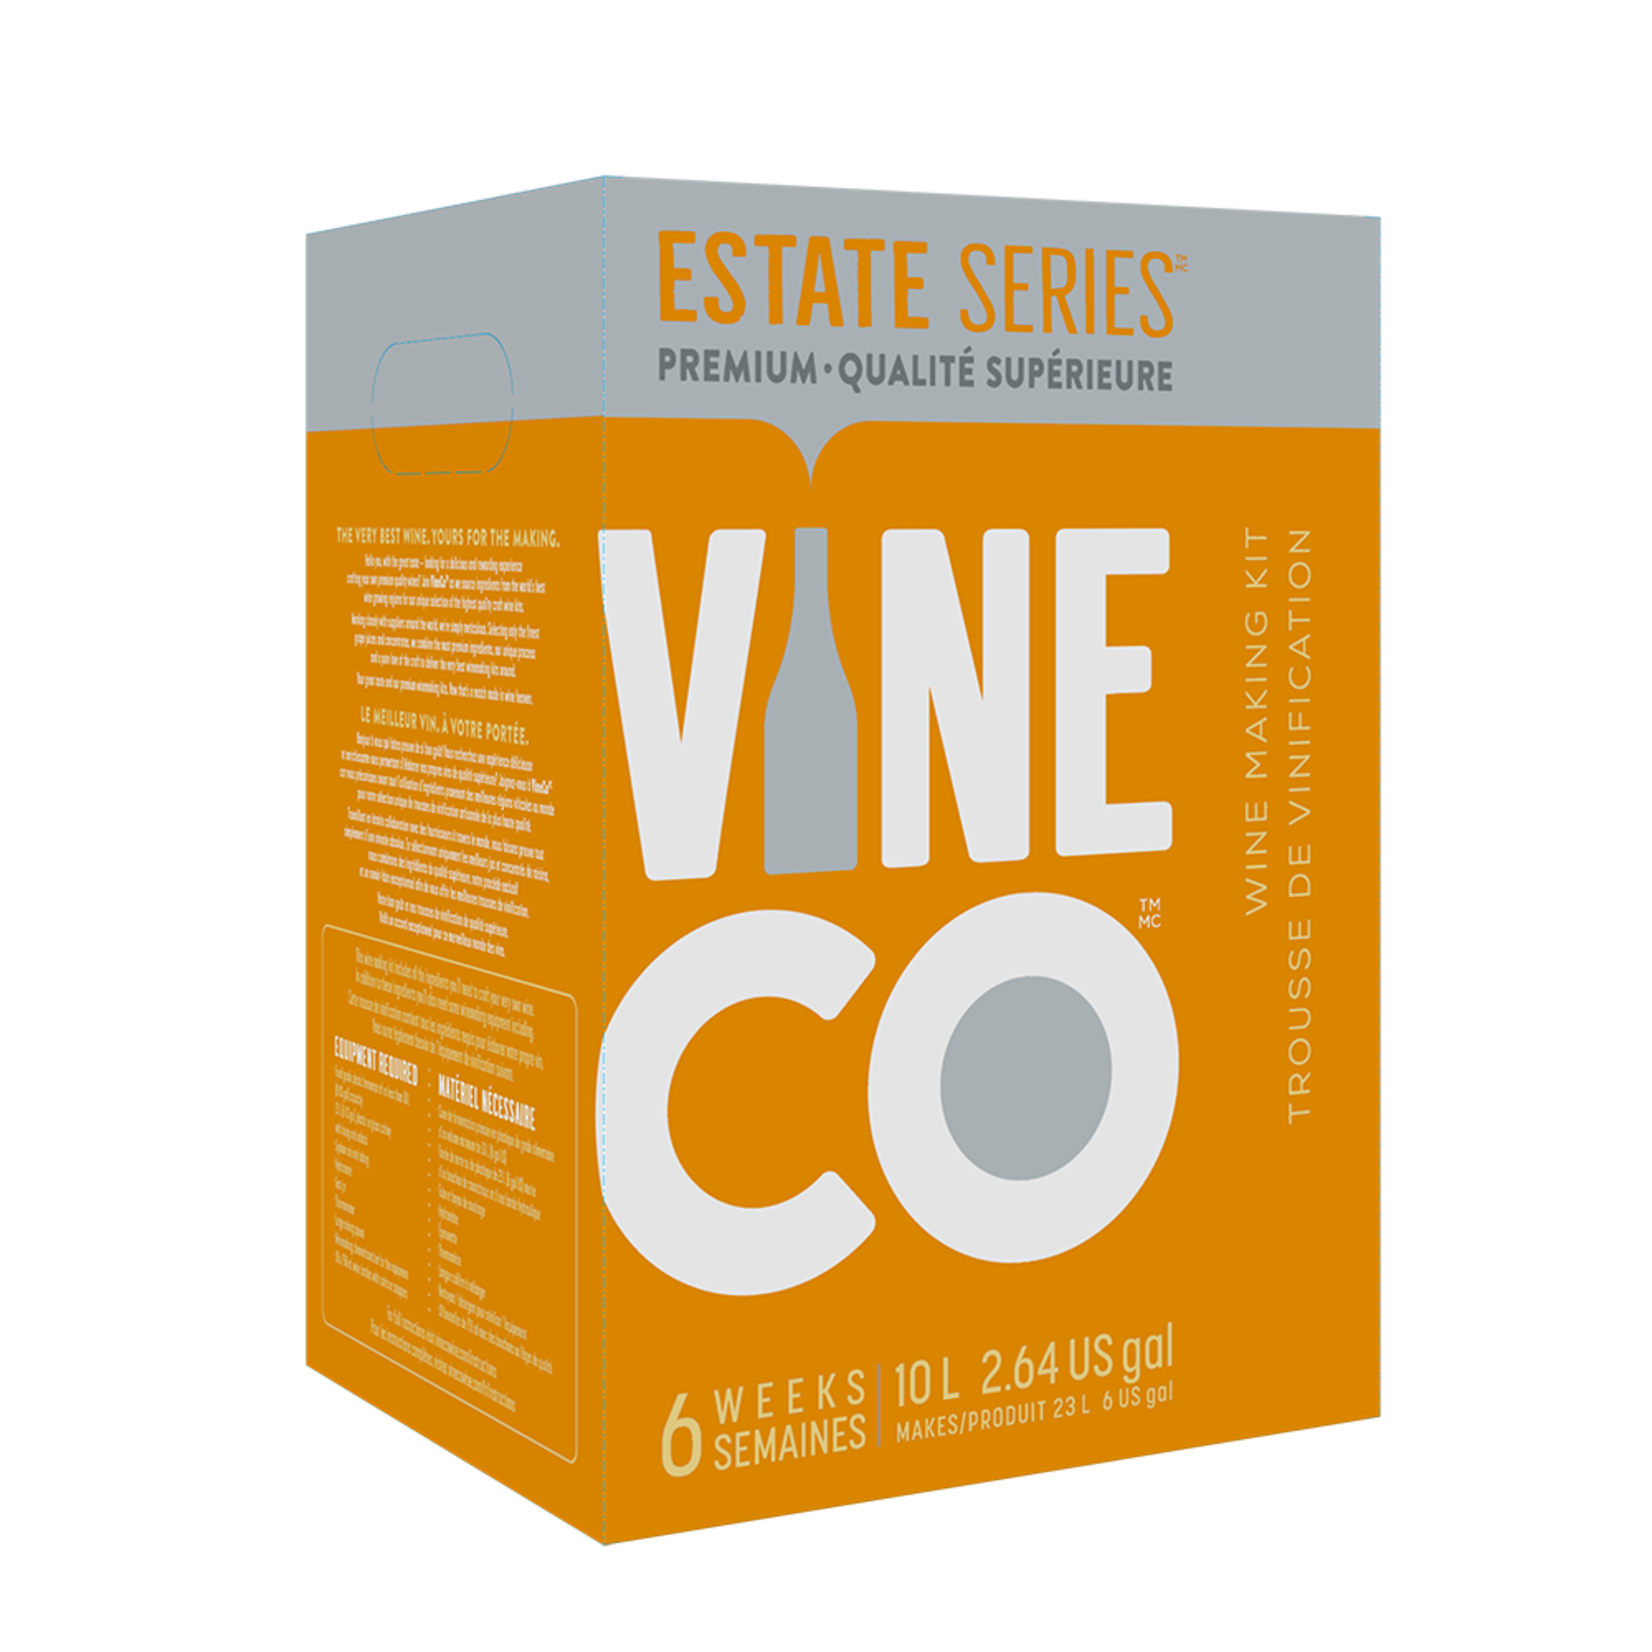 Vine Co. Estate Series Merlot (Wine Kit), CAL